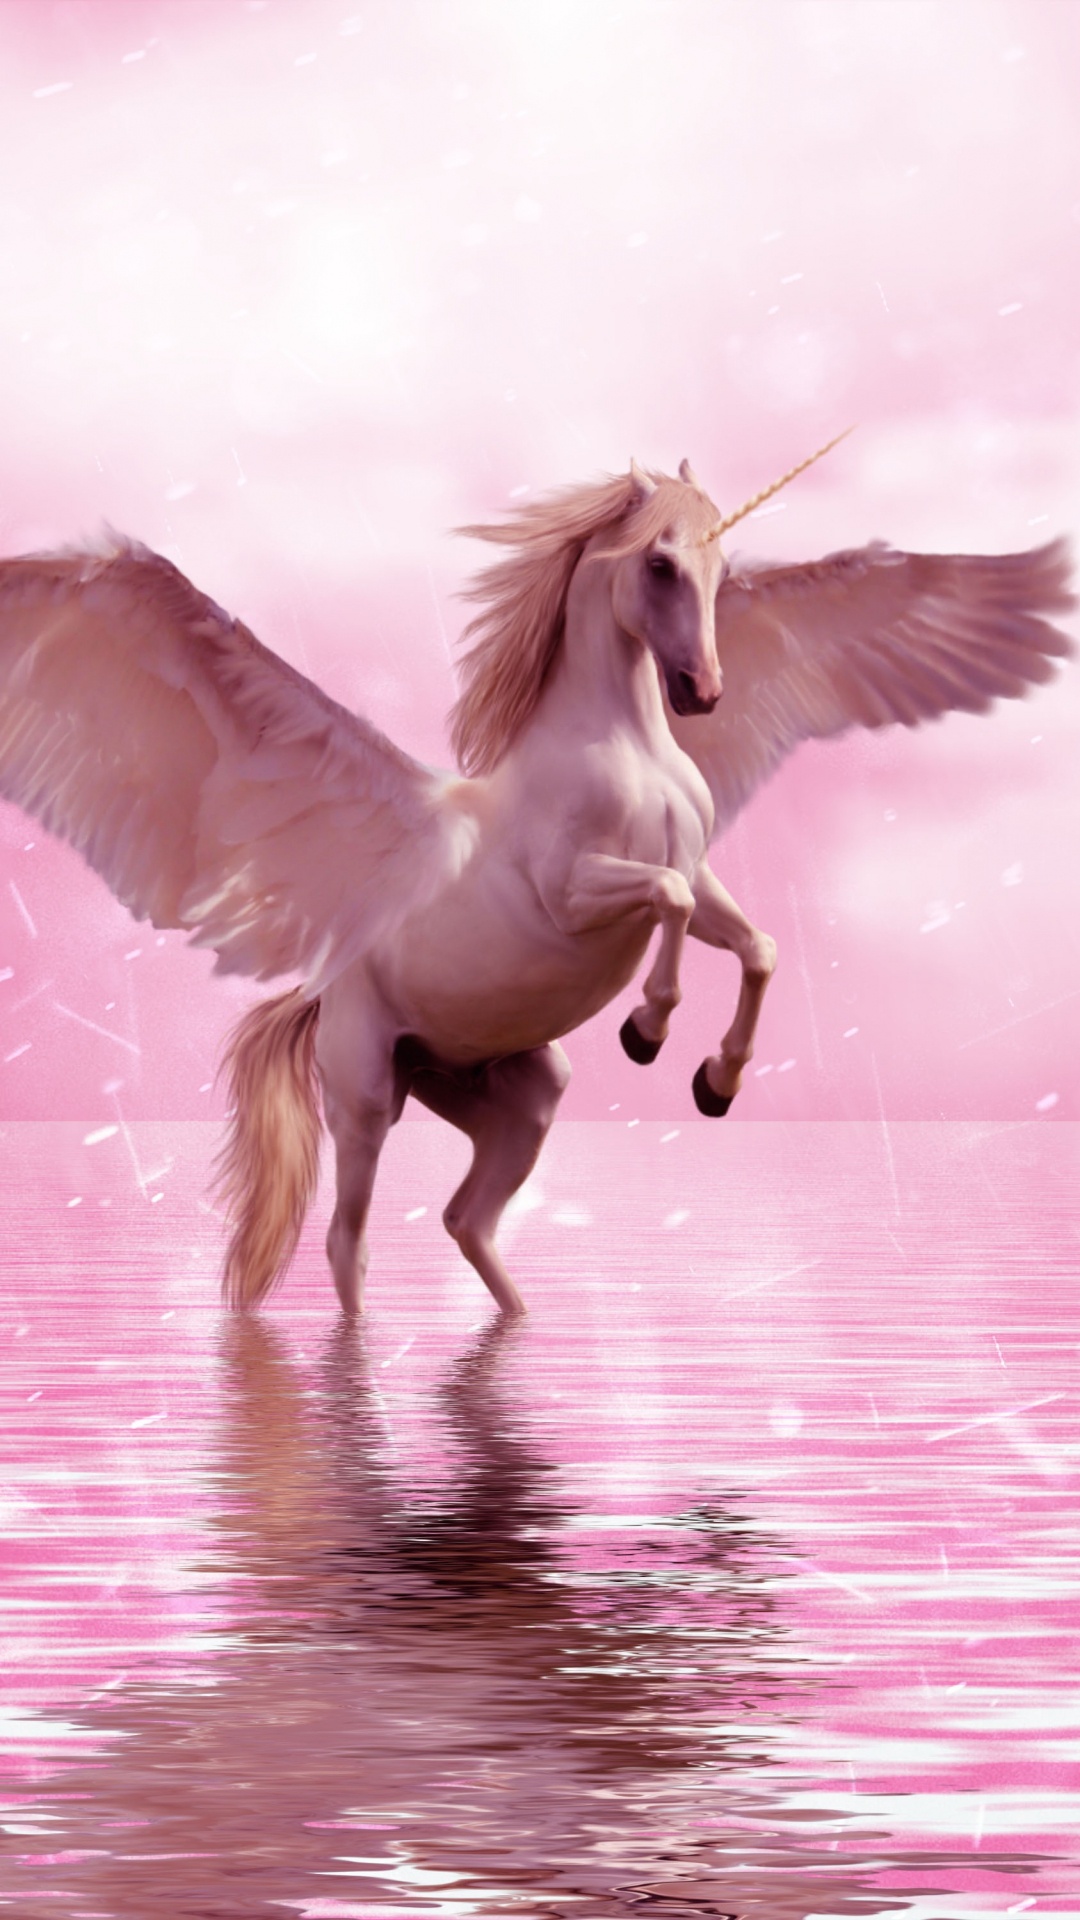 独角兽, 飞马, 翼, 粉红色, 神秘的生物 壁纸 1080x1920 允许